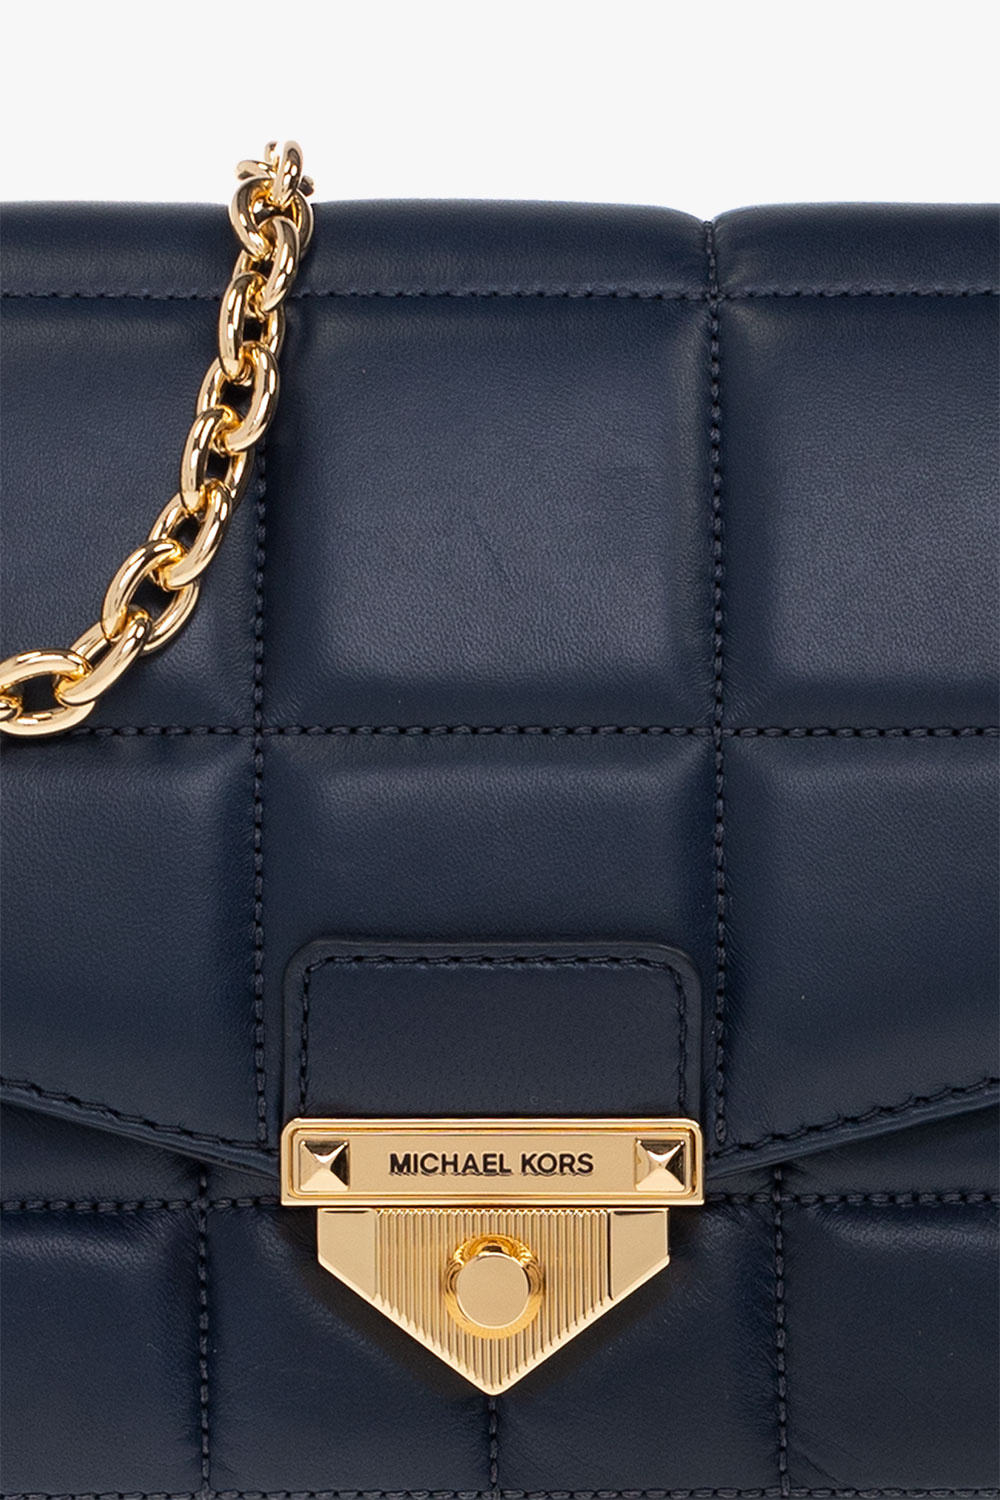 Michael Kors navy blue pebbled leather large shoulder bag